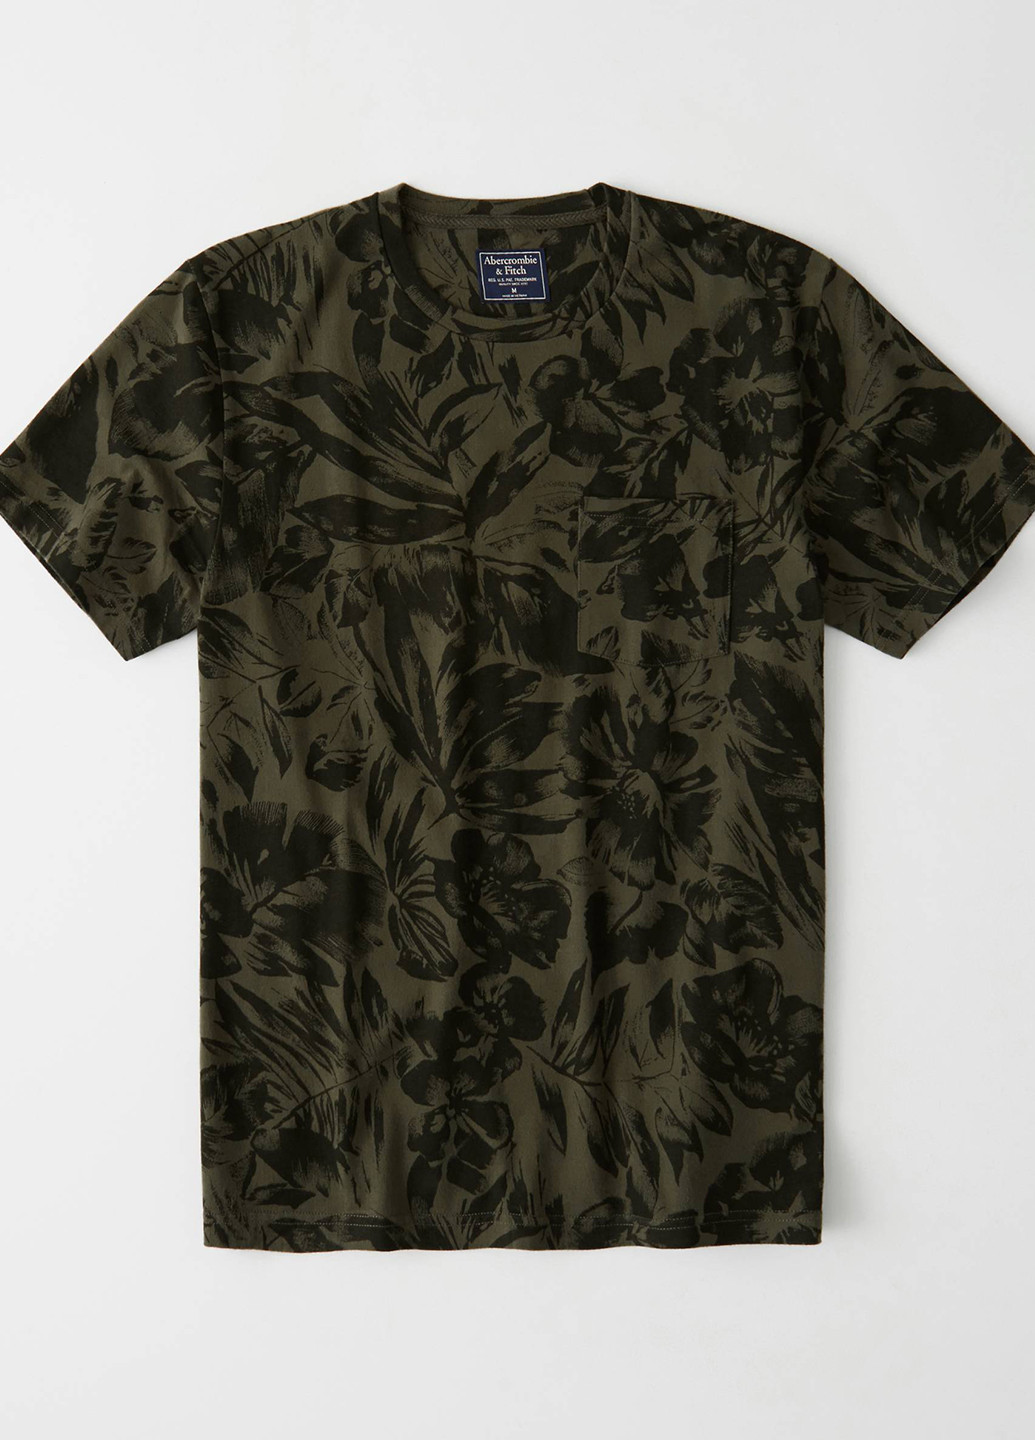 Хаки (оливковая) футболка Abercrombie & Fitch